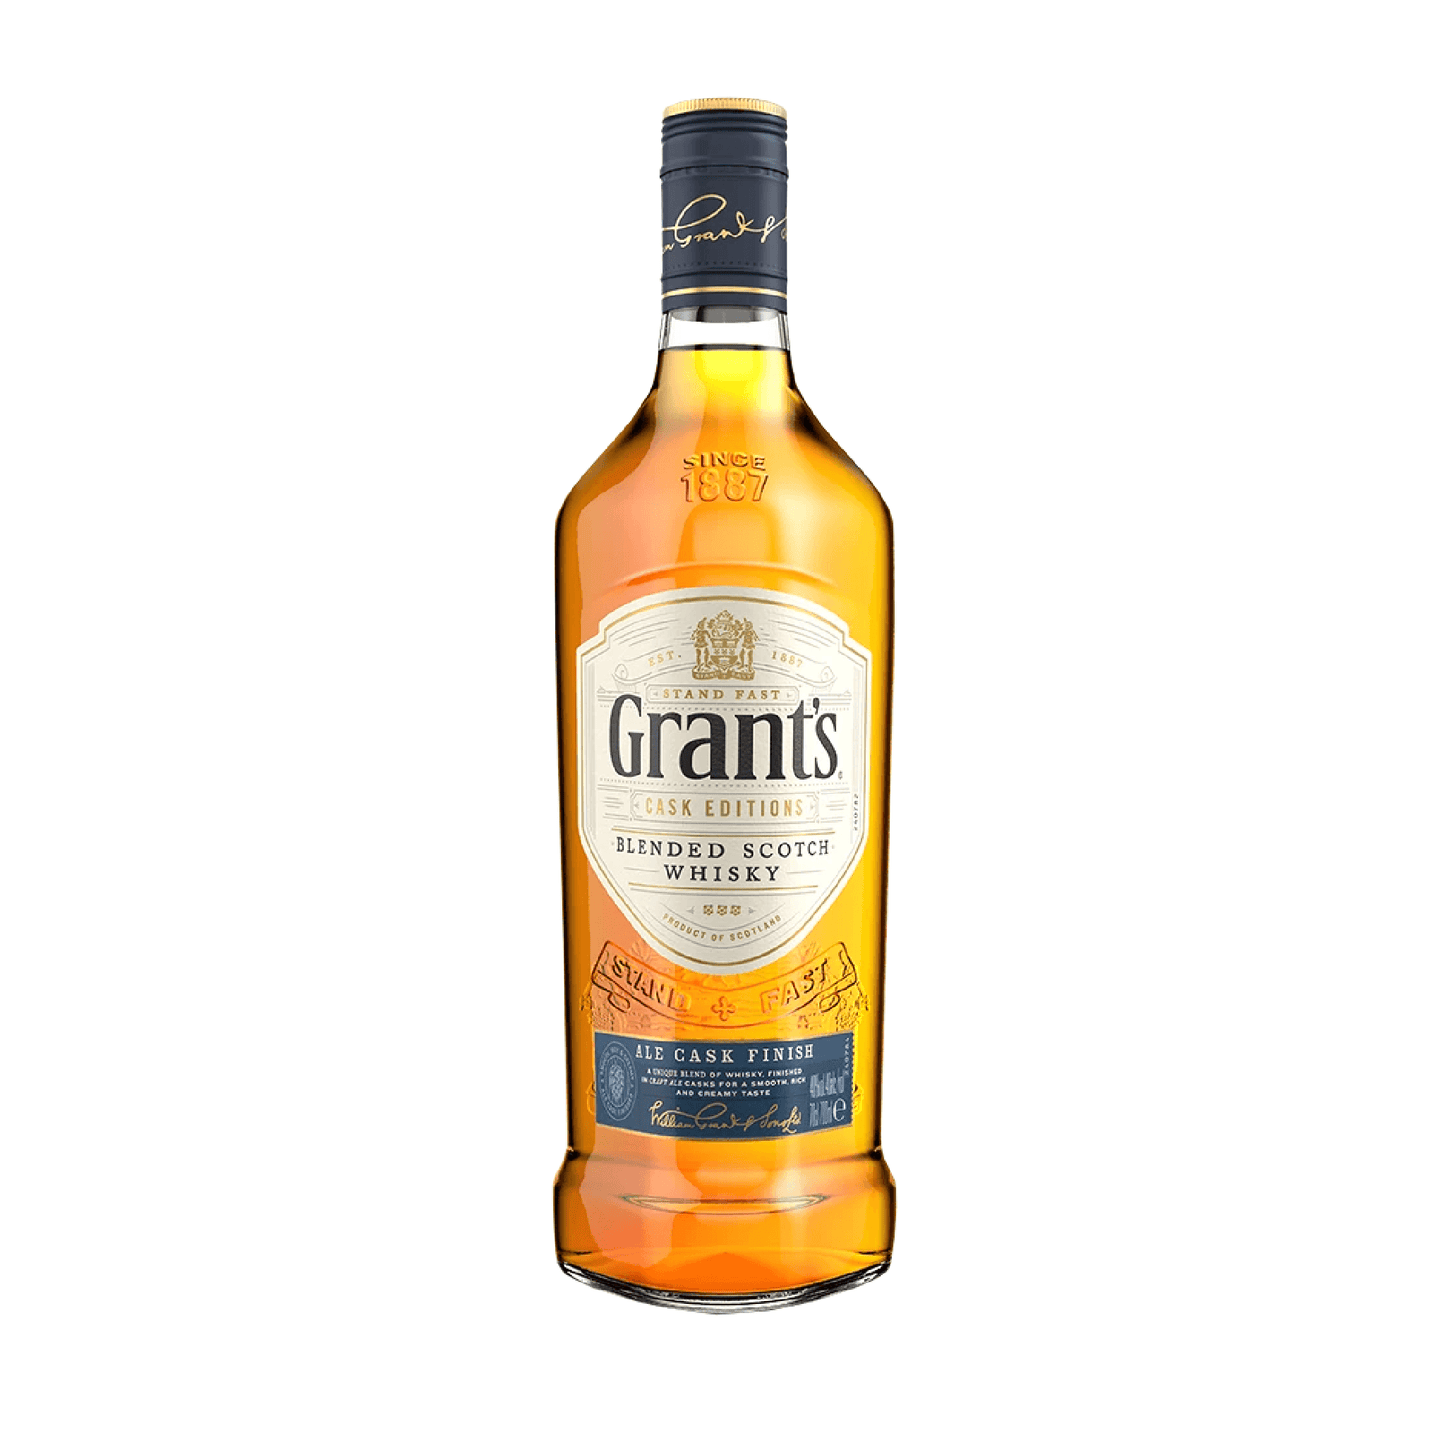 Grant's Ale Cask Finish Scotch - Liquor Geeks